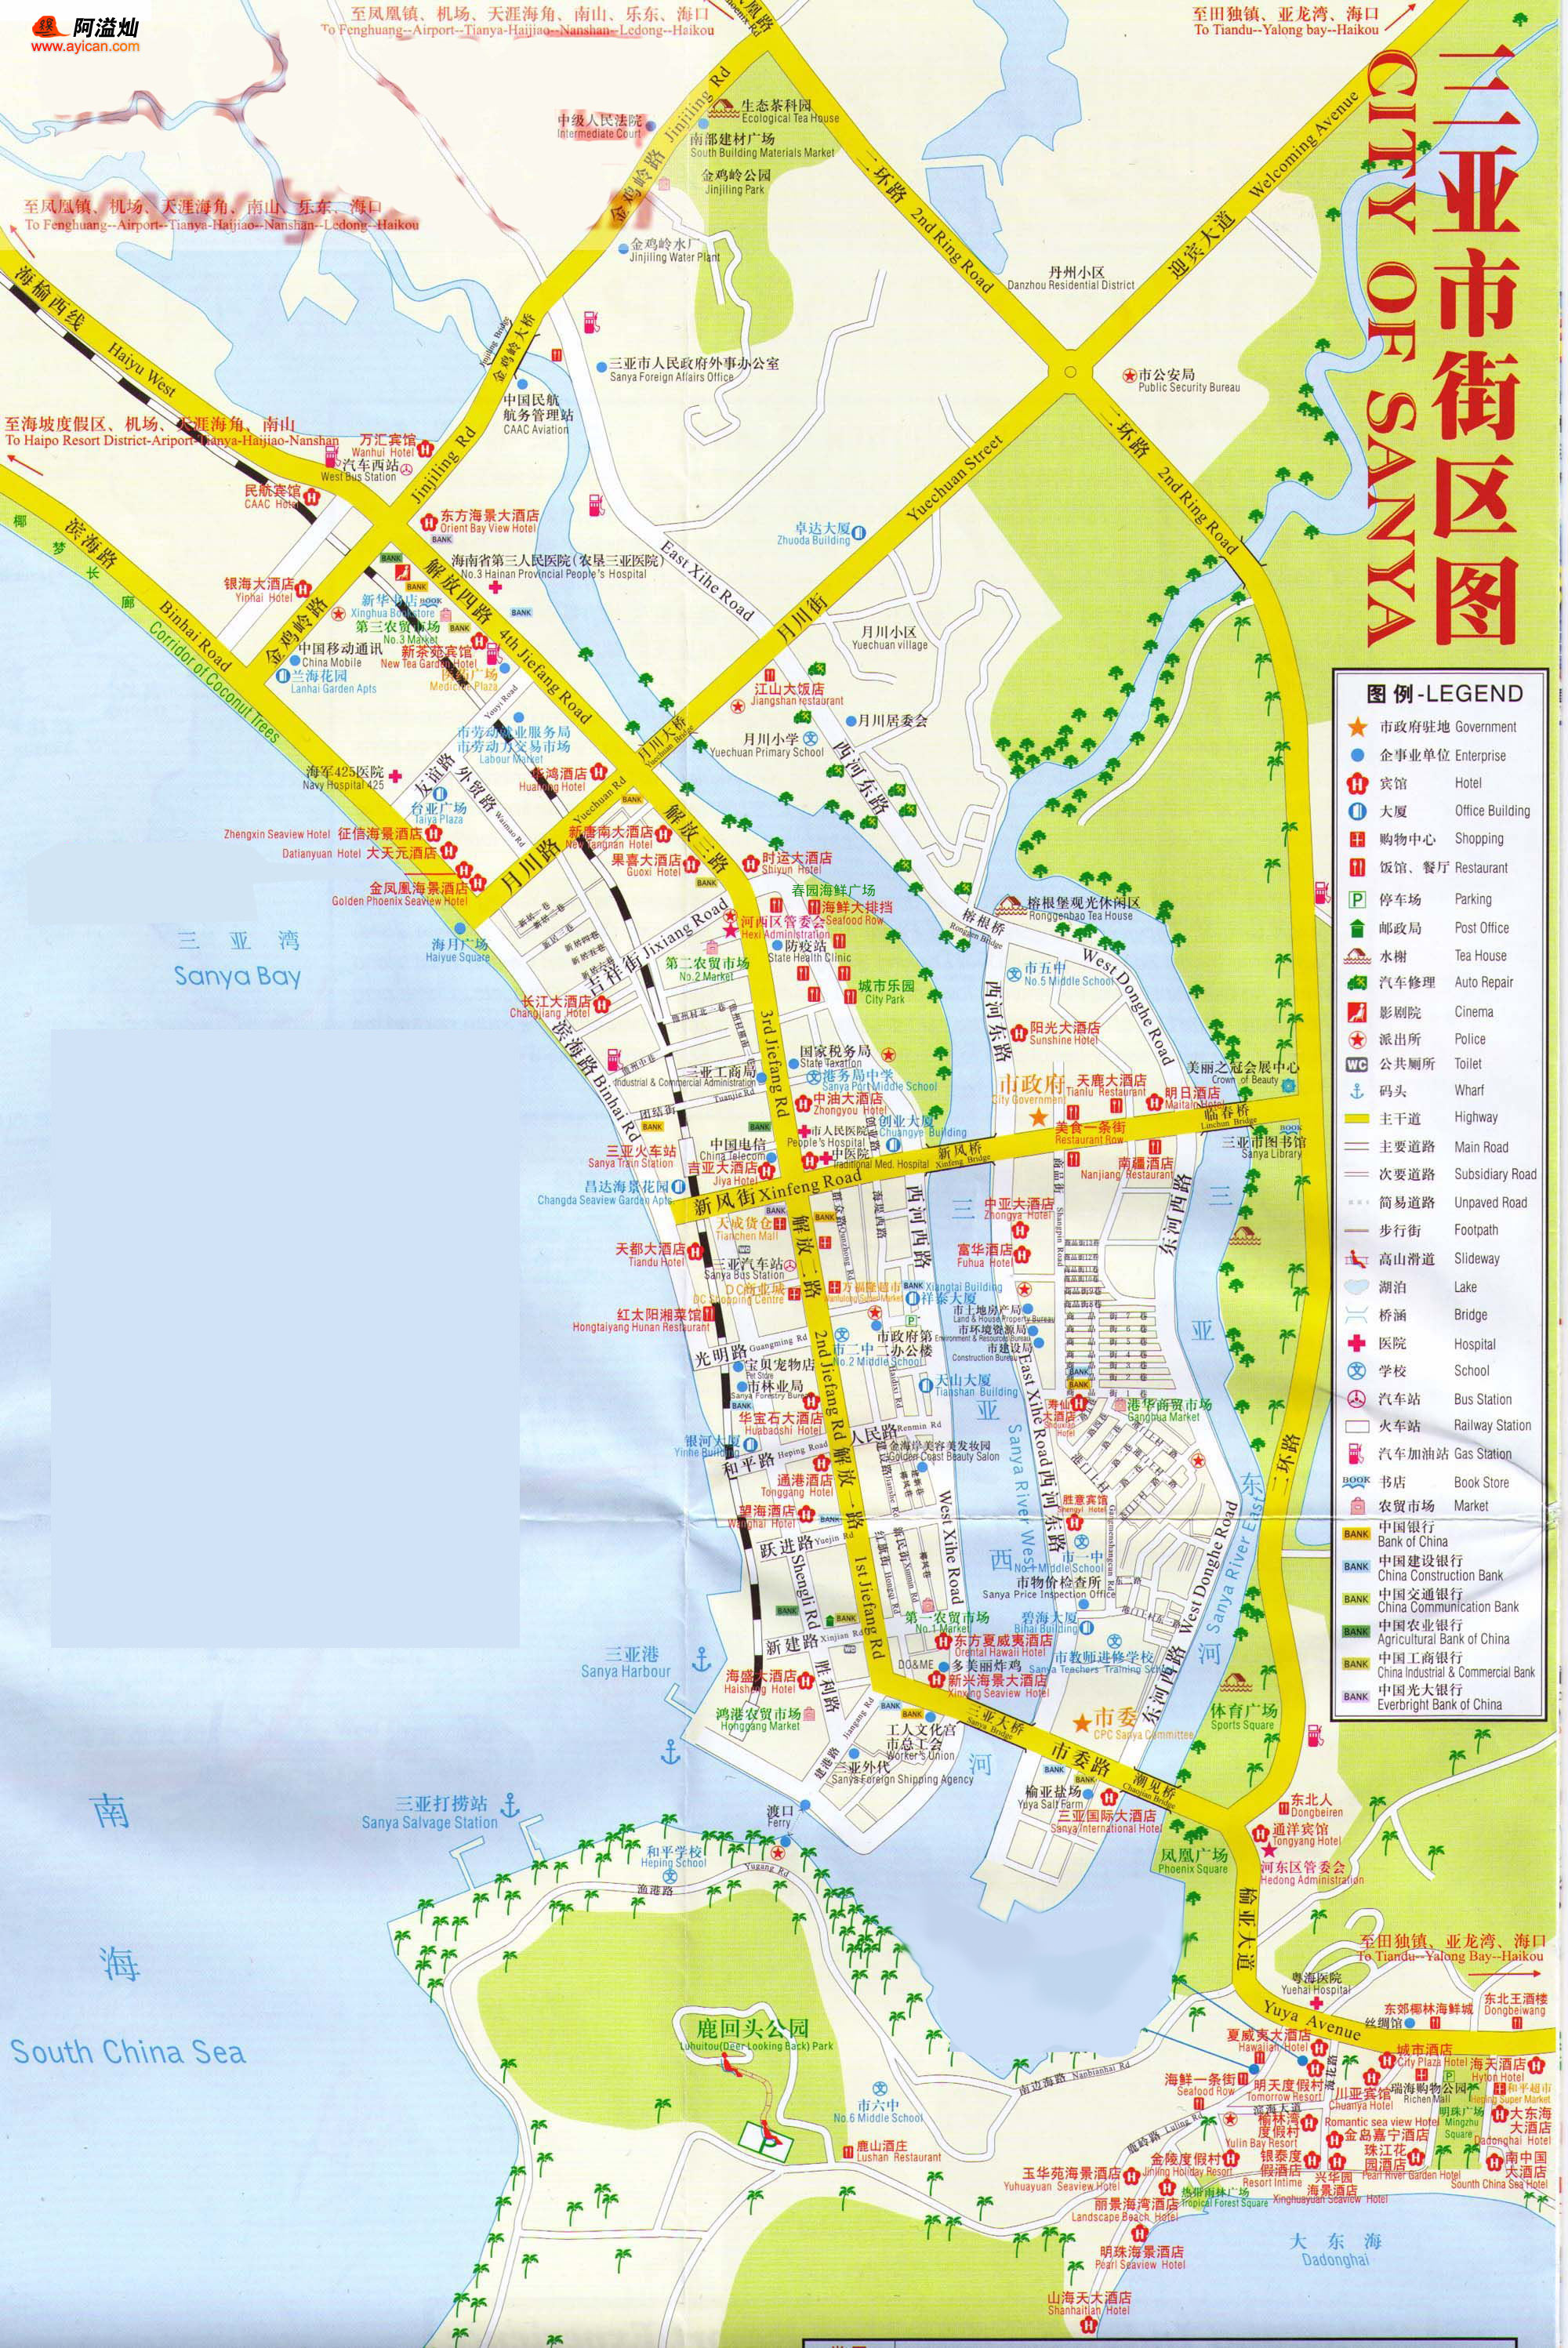 【旅途】     ¤ 三亚市地图:(图片挺大的,我故意没有缩小,点击查看